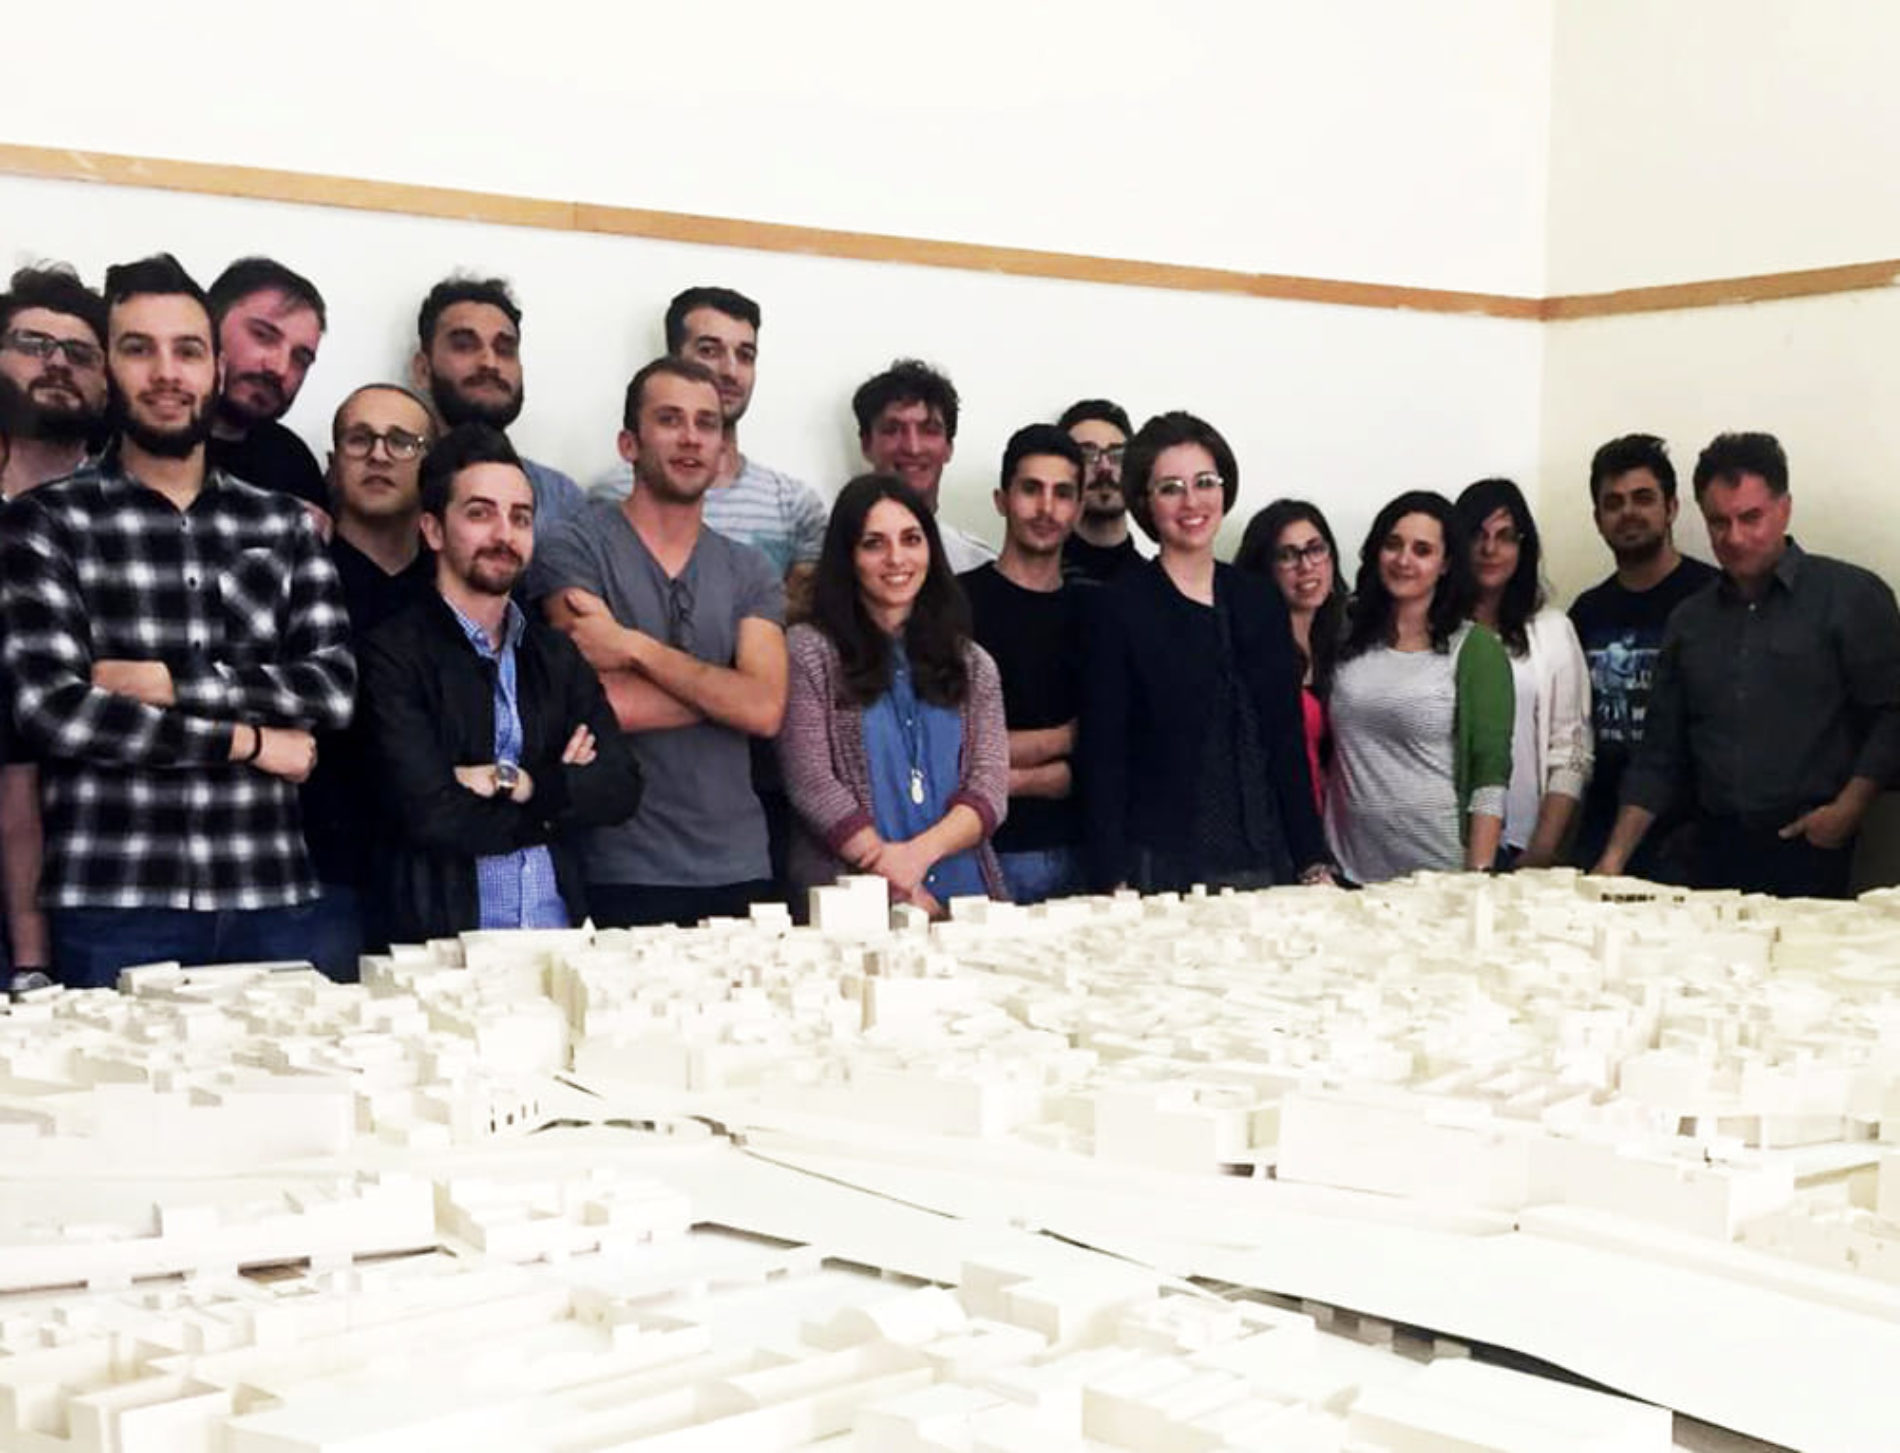 Barrafranca. La barrese Sofia Pistone tra i giovani laureati premiati dal Regno Saudita